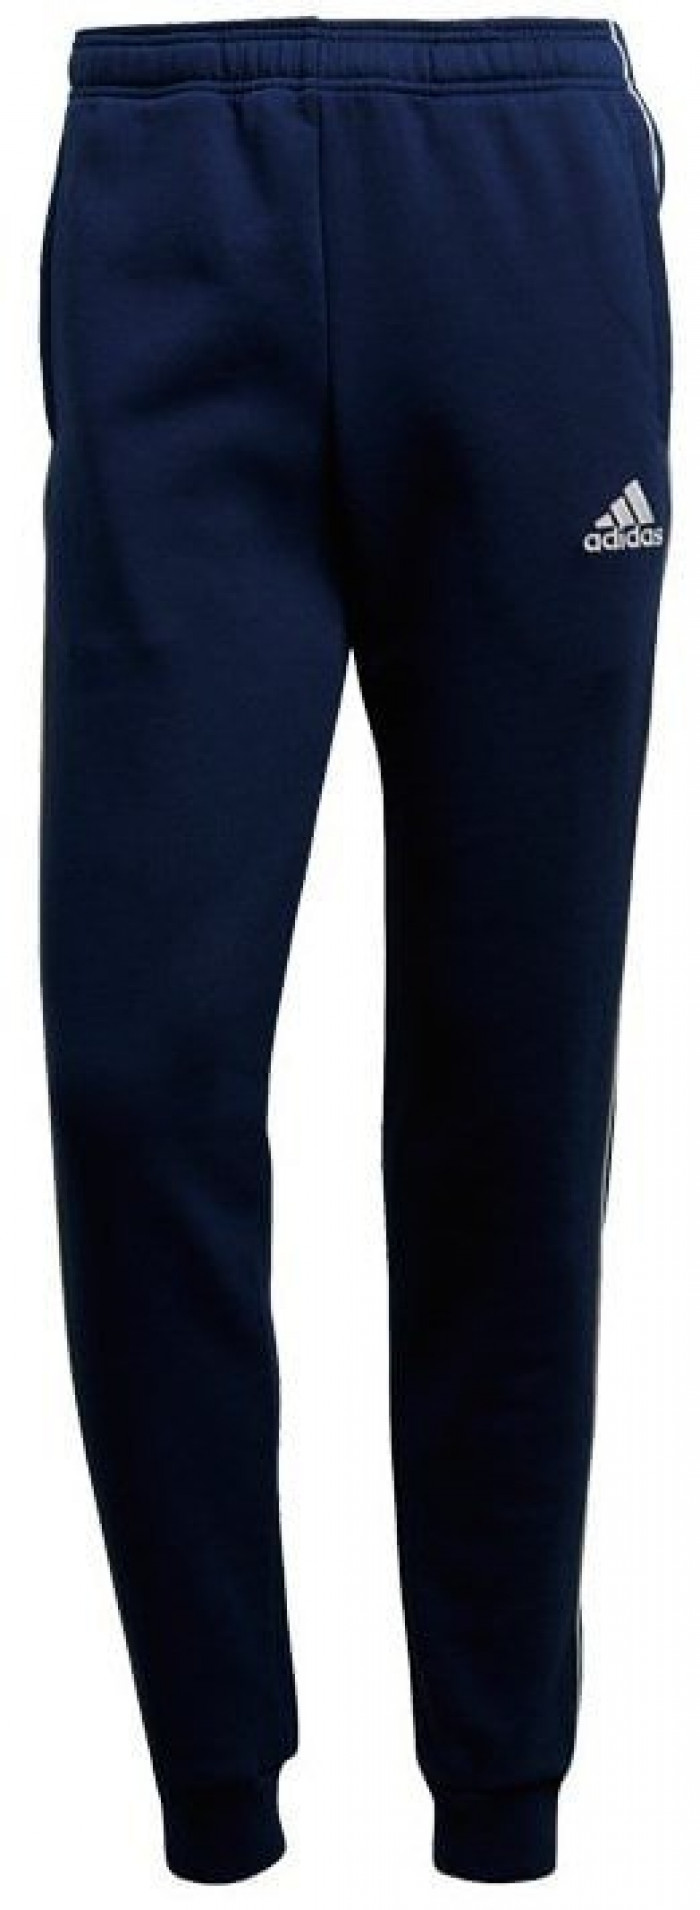 Мужские брюки спортивные синие зауженные трикотажные на резинке джоггеры Adidas Core 18 цвет синий размер 170 - 175 cm/M Male — купить недорого с доставкой, 49759